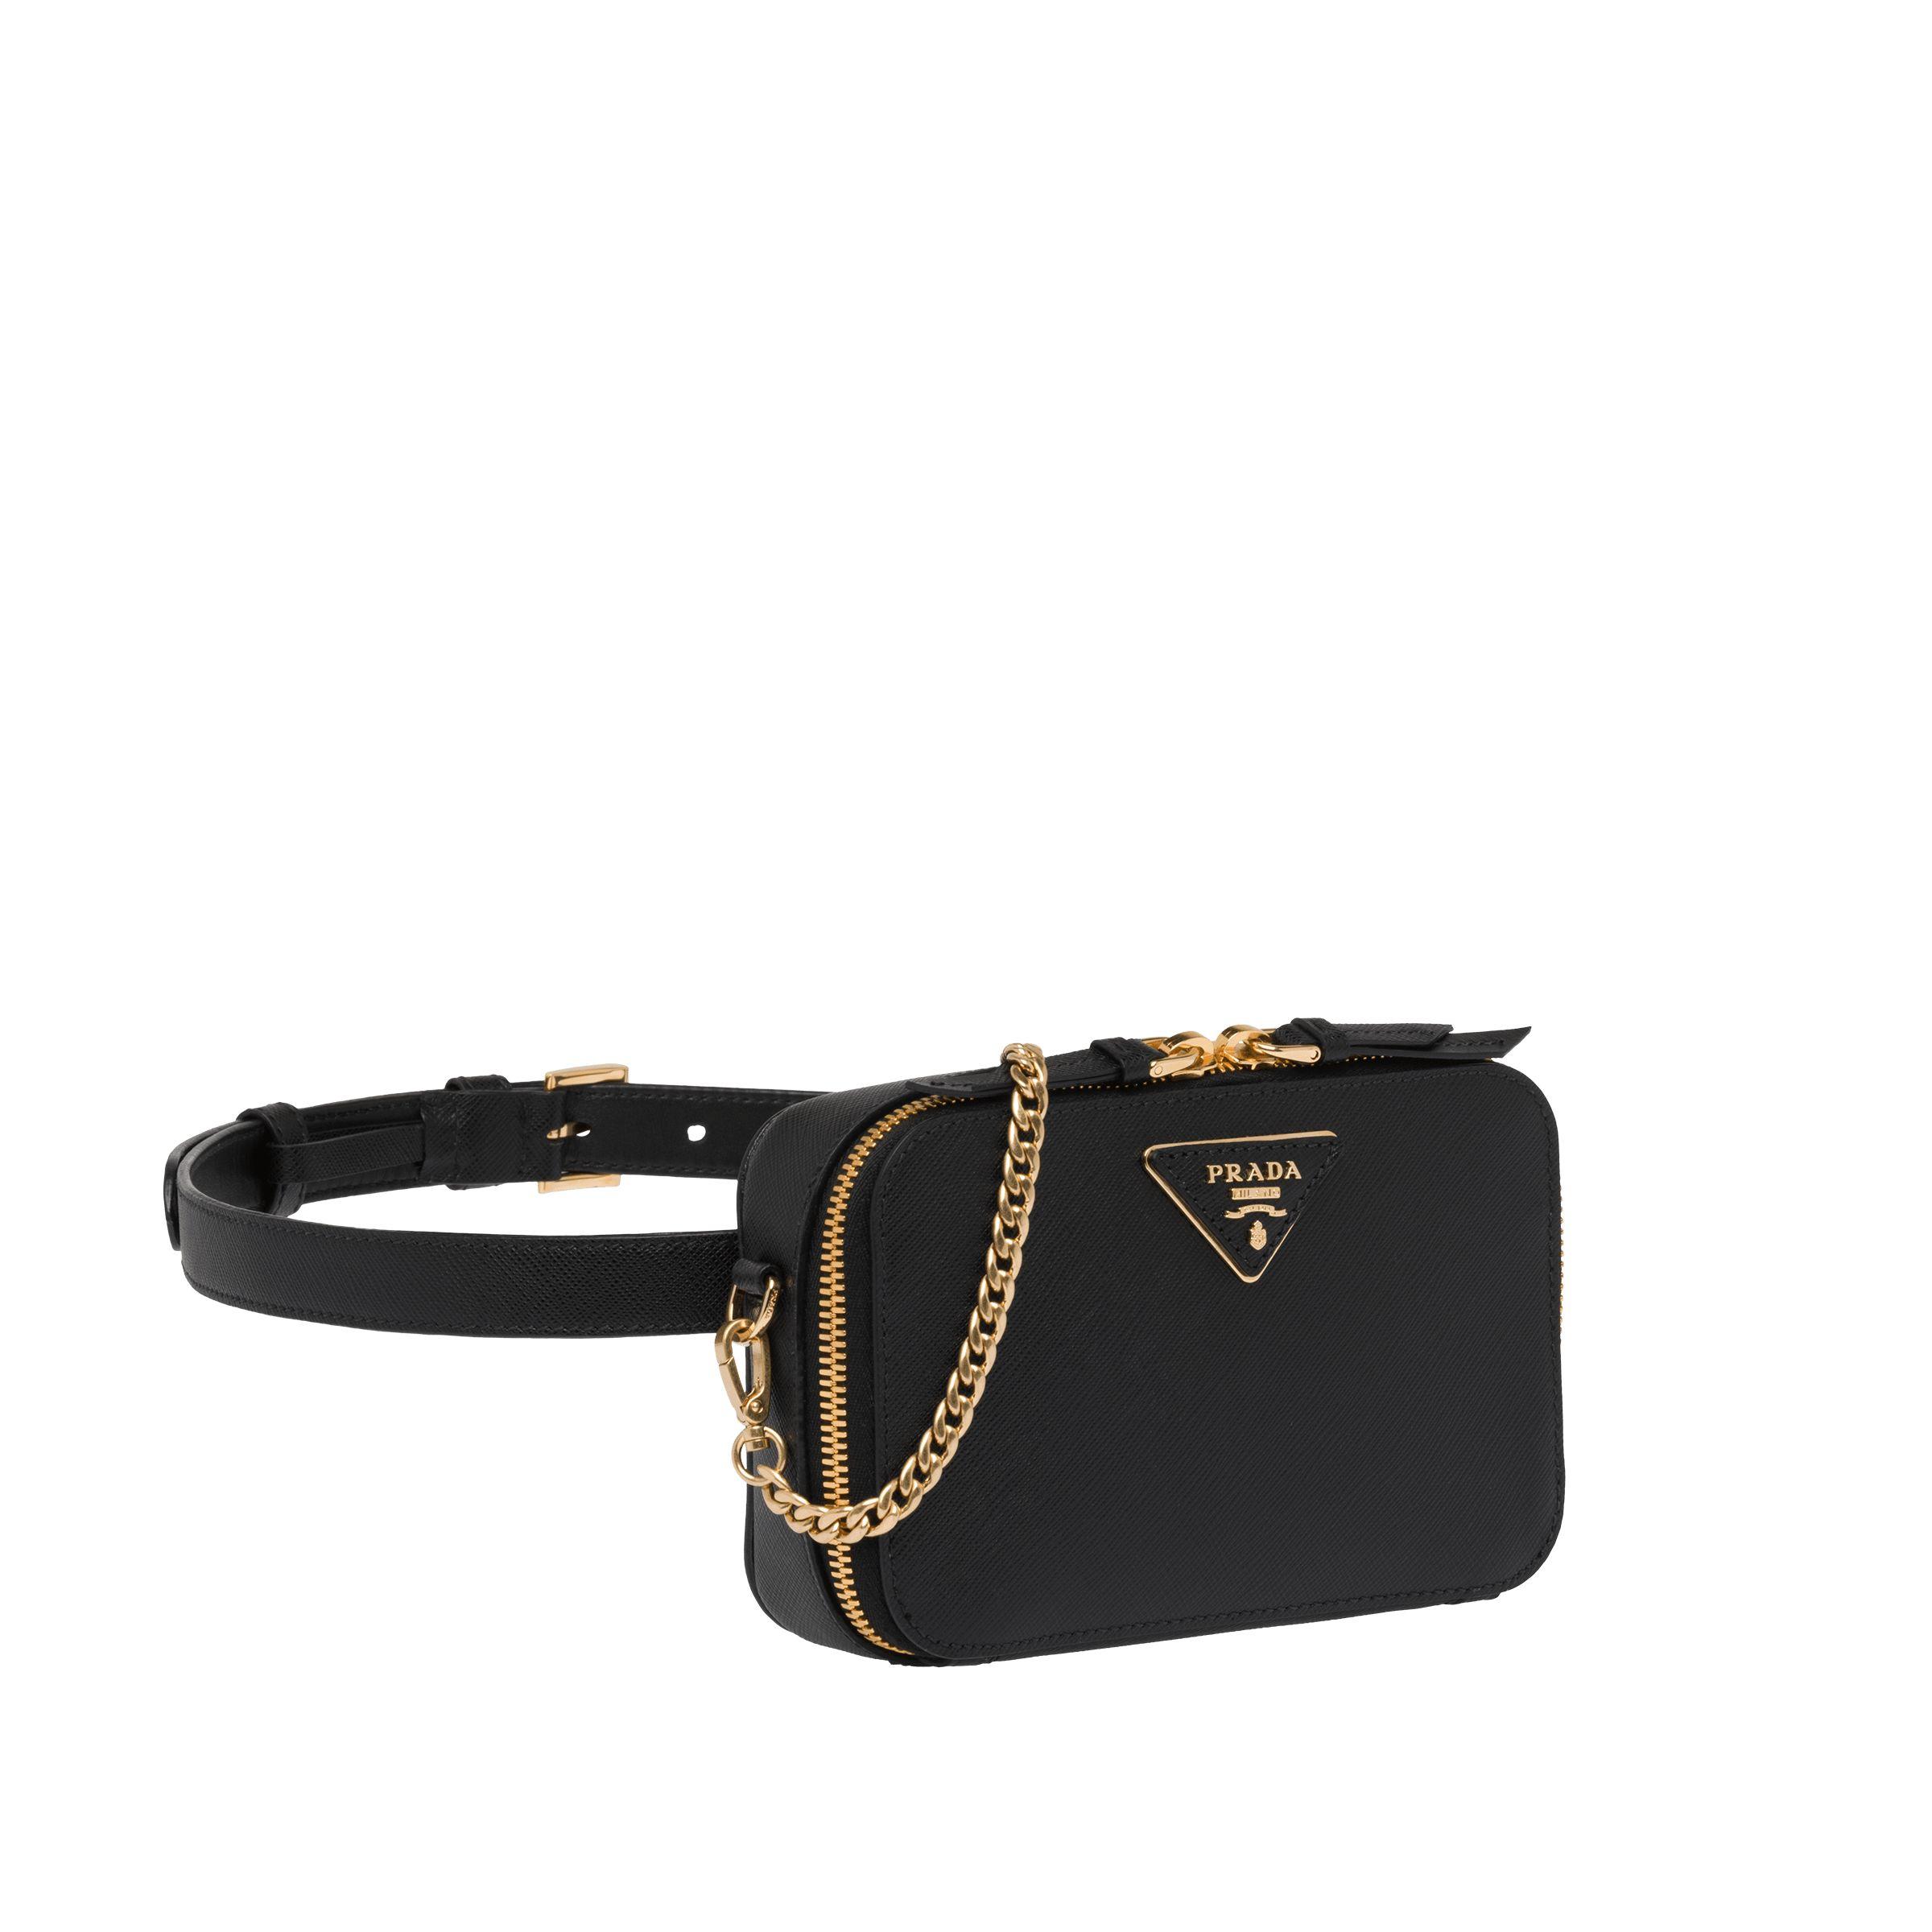 Prada Odette Saffiano Leather Belt Bag in Black | Lyst